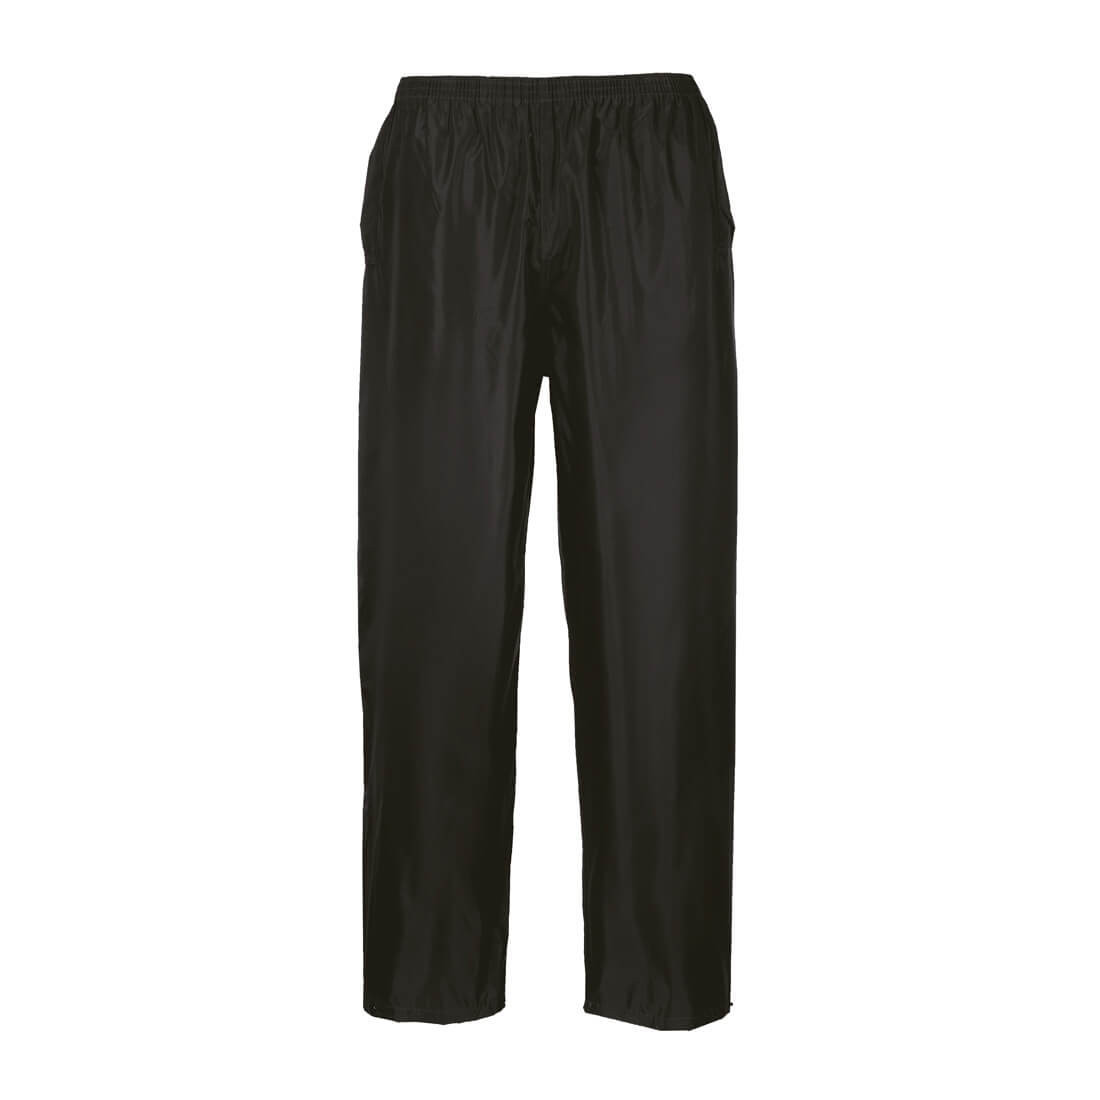 Pantalon de Pluie Classic - Les vêtements de protection